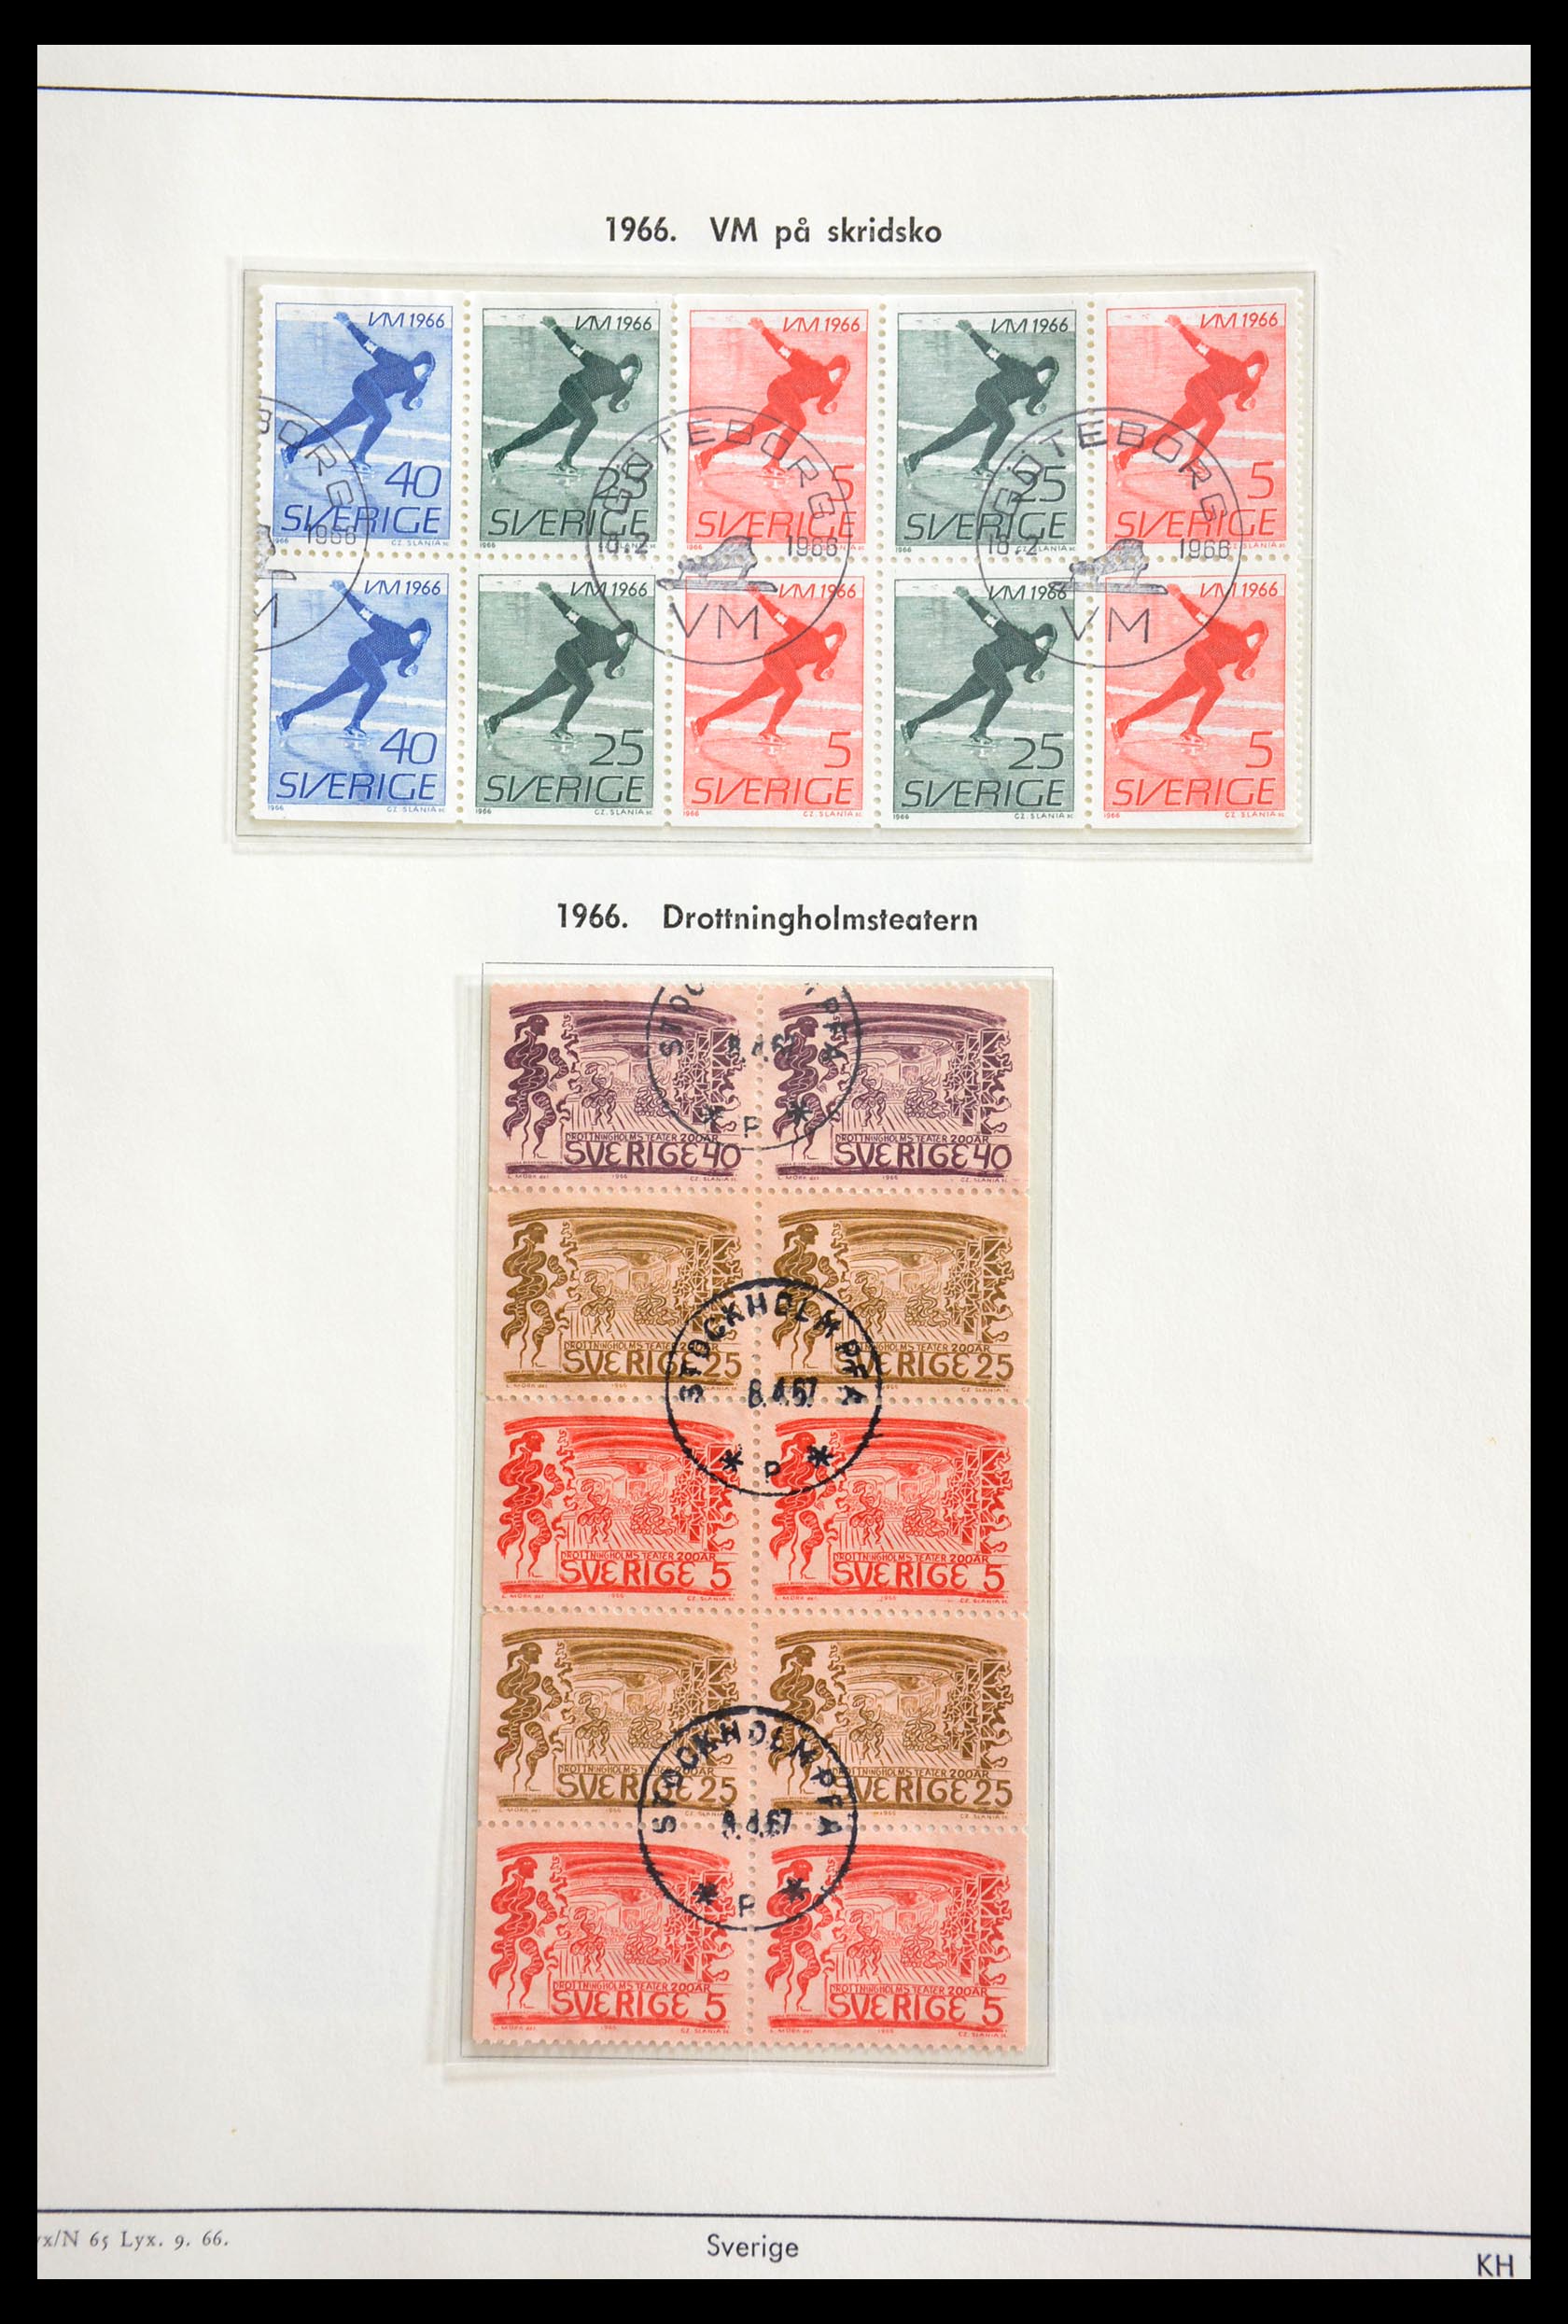 29221 116 - 29221 Sweden 1855-1967.